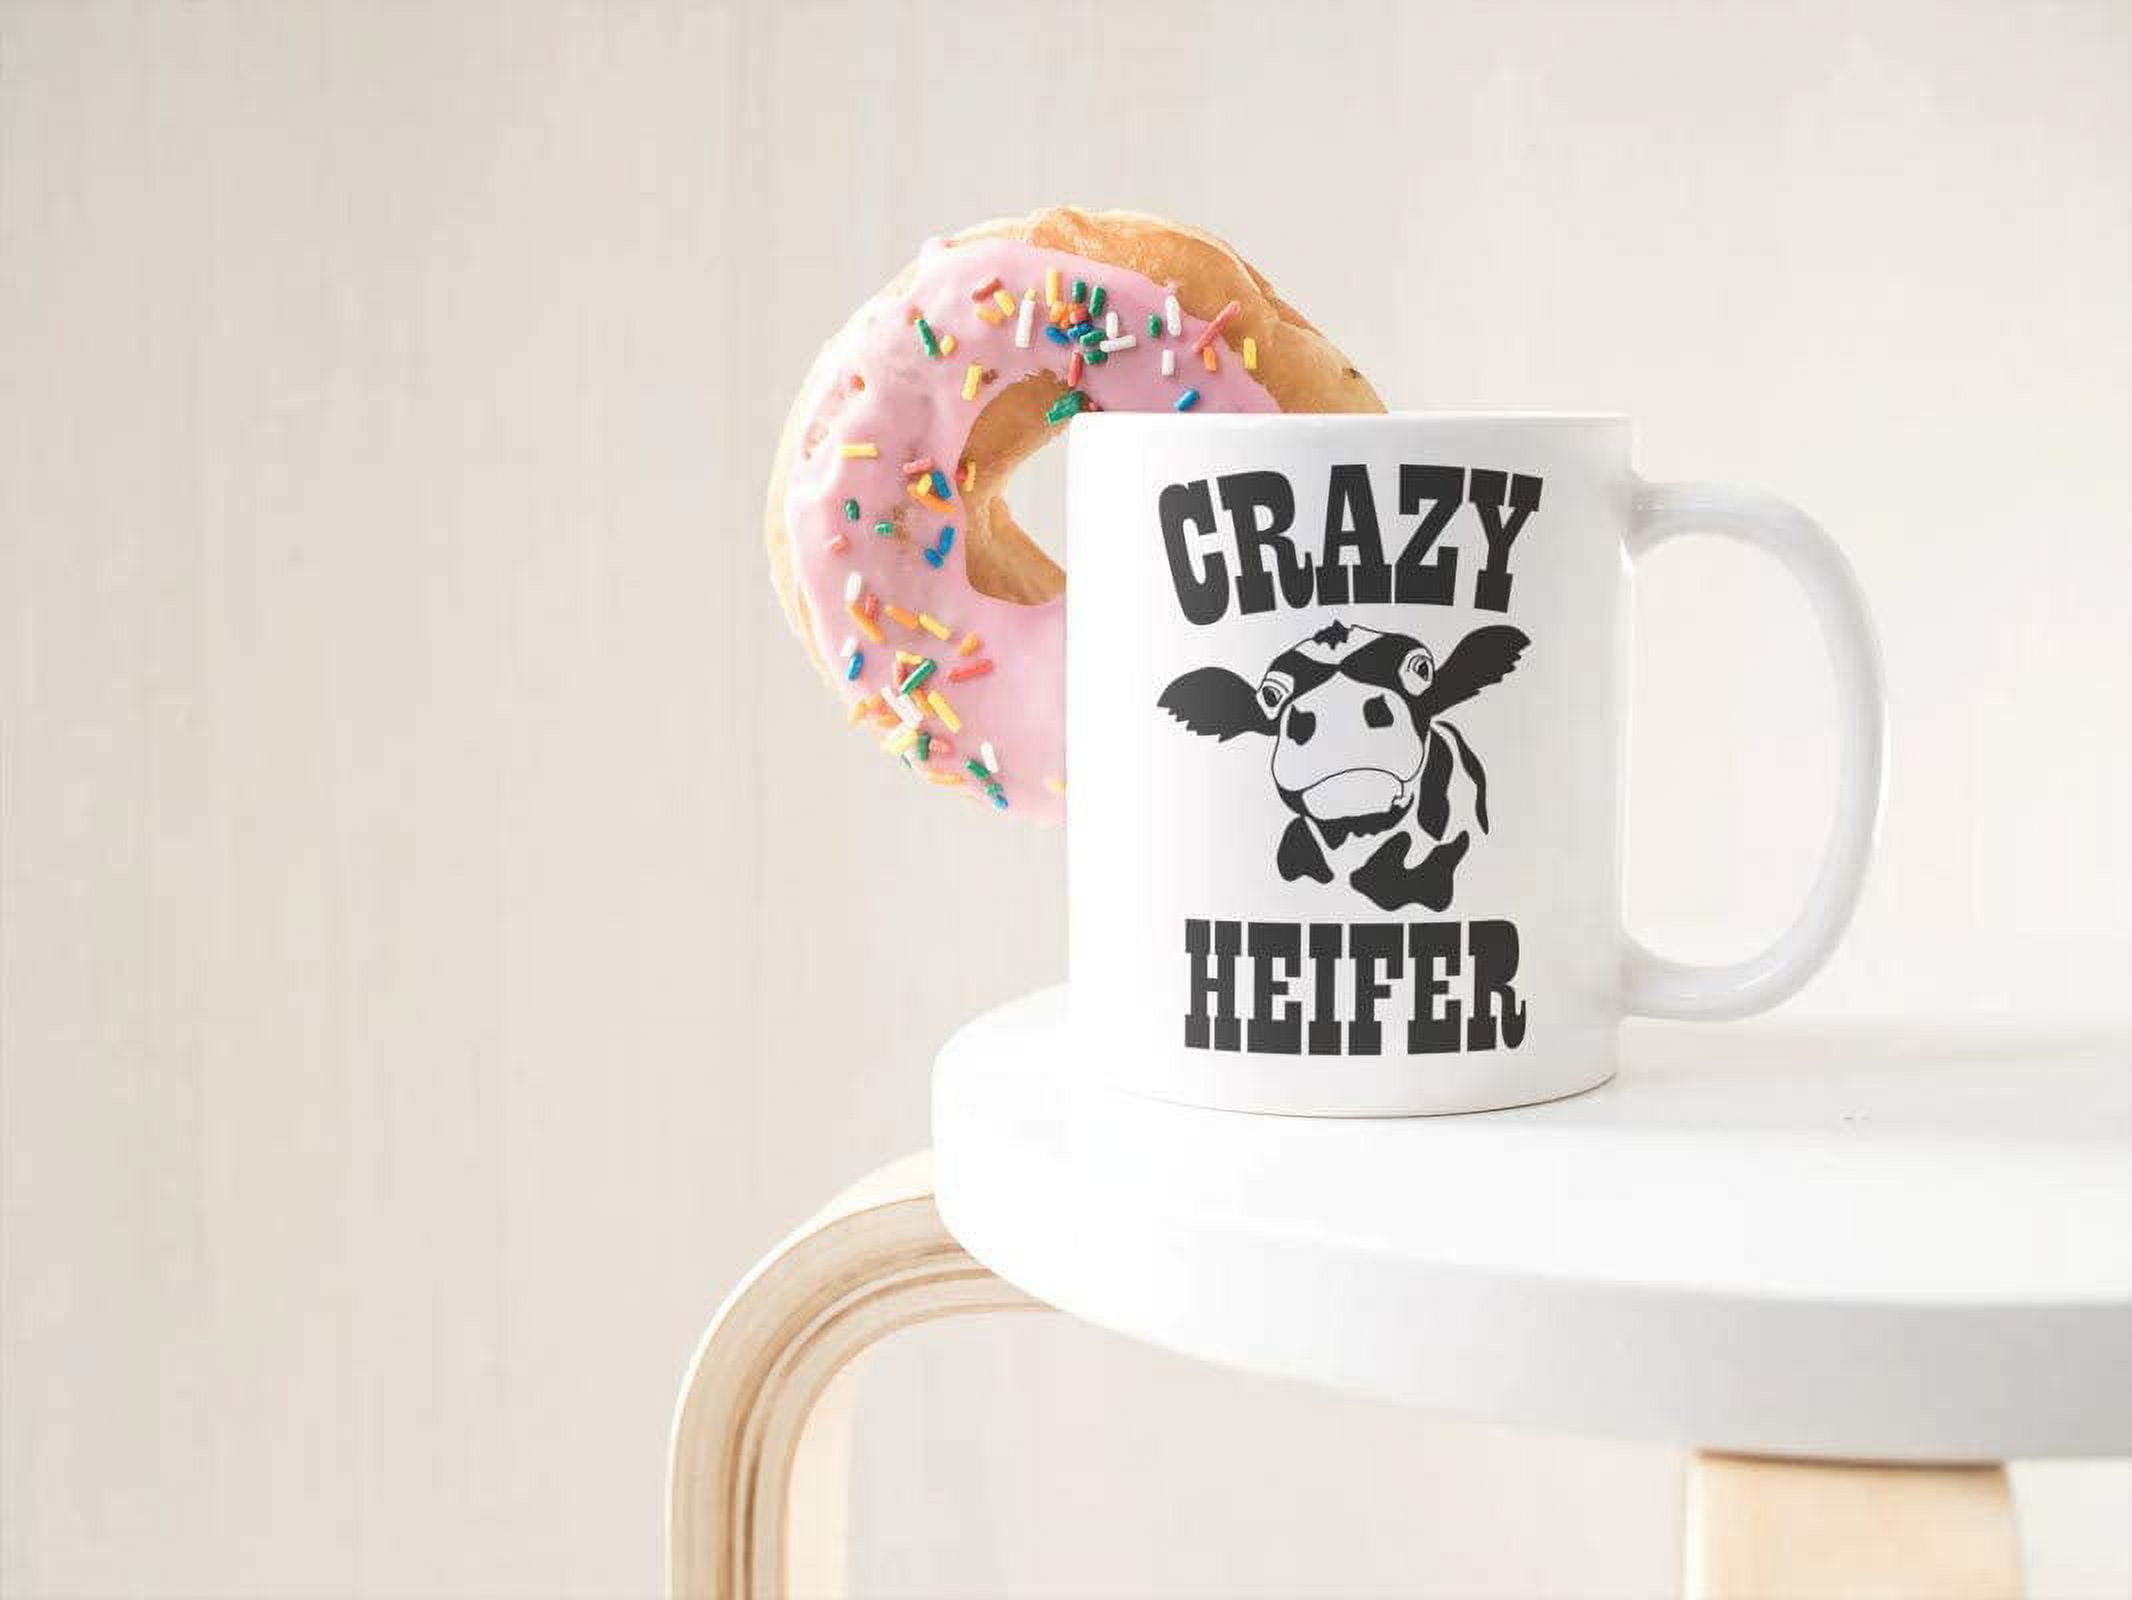 15 oz Extra Large Coffee Mug - Not Today Heifer – Candlelit Desserts